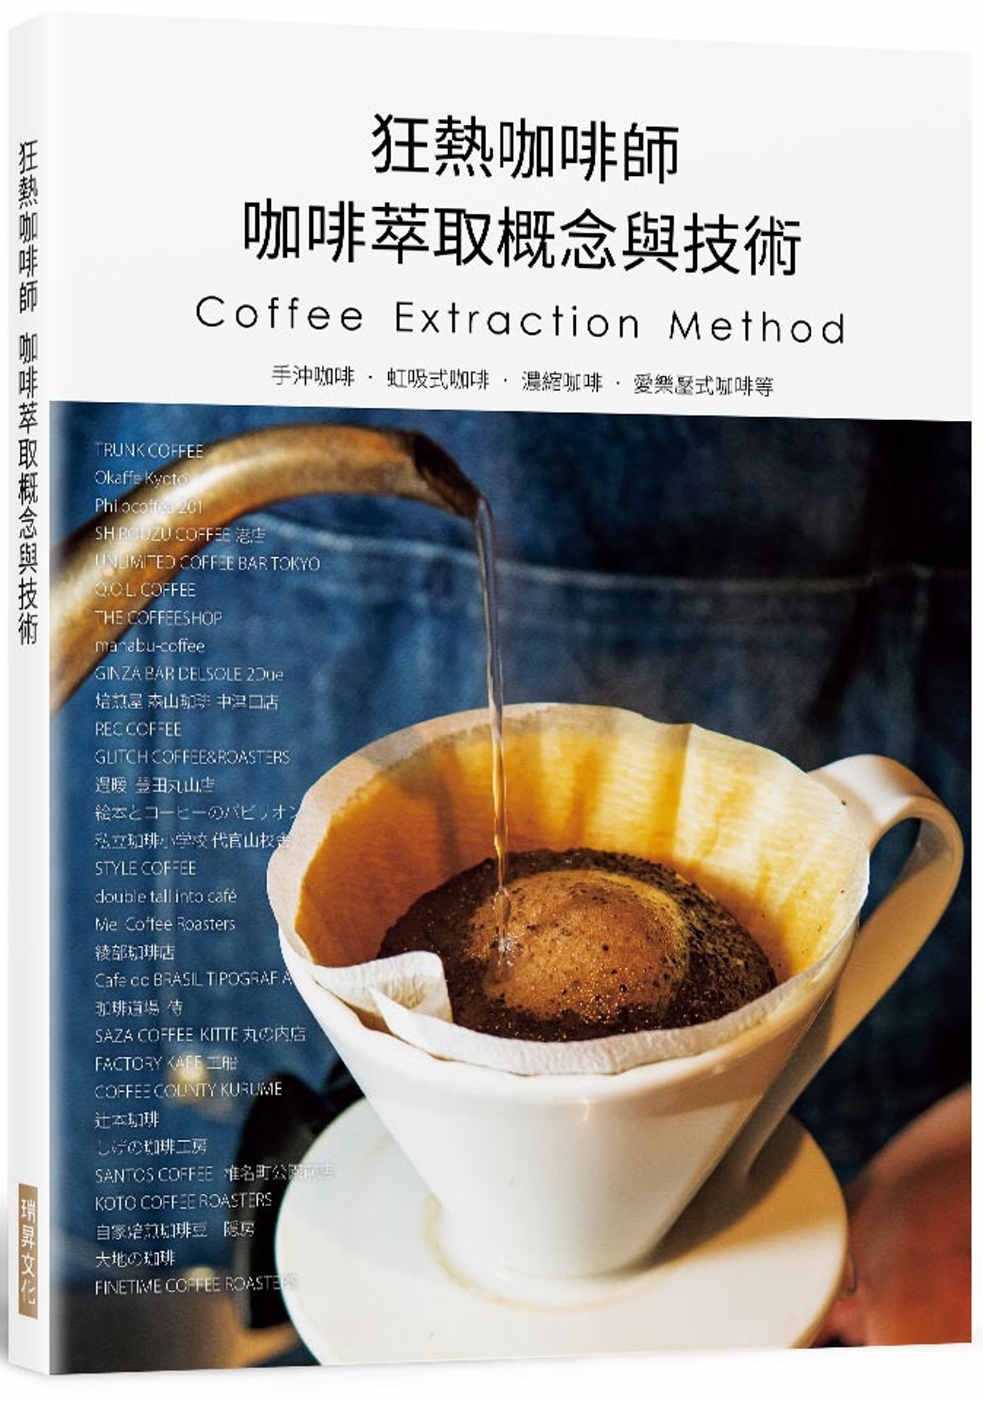 狂熱咖啡師 咖啡萃取概念與技術：手沖咖啡.虹吸式咖啡.濃縮咖啡.愛樂壓式咖啡